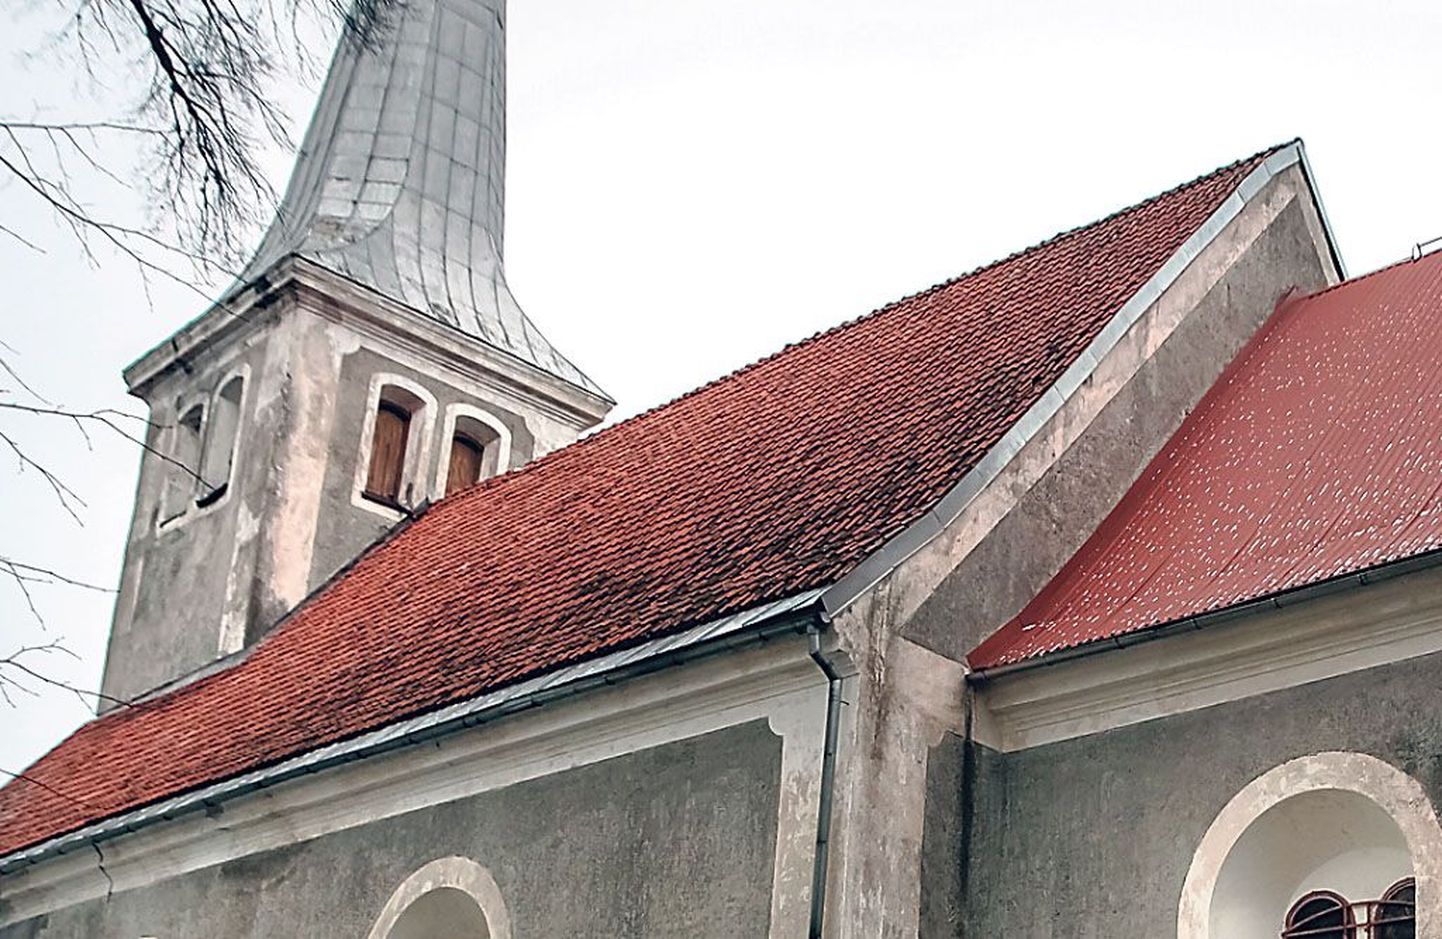 Audru kiriku pikihoone katus on kaetud kividega, kooripealne aga plekiga, vesi sadas läbi katuse ja kellatorni vahelisest liitekohast.